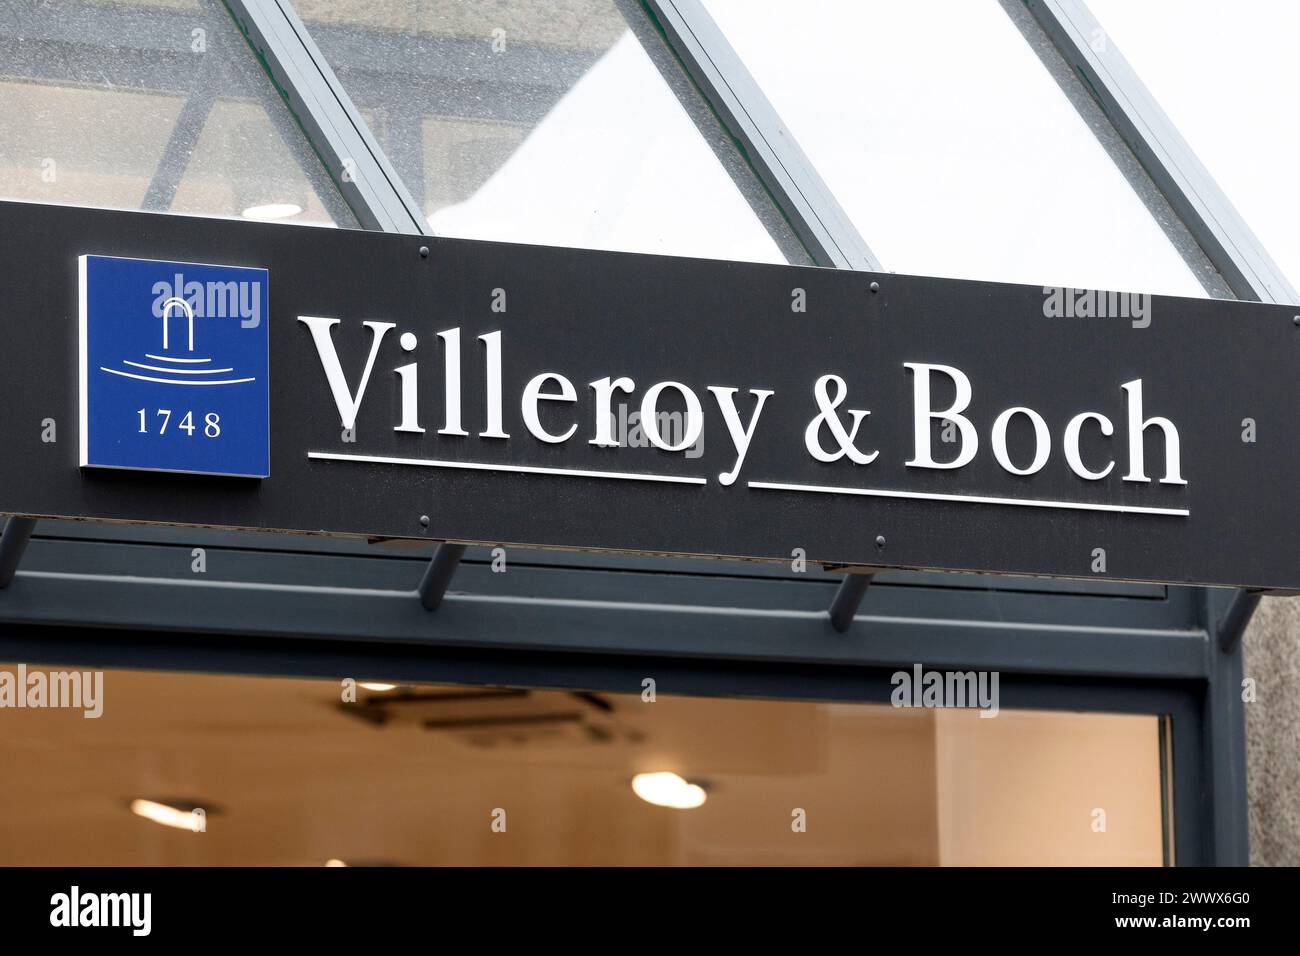 Villeroy & Boch, fabricant de céramique Banque D'Images